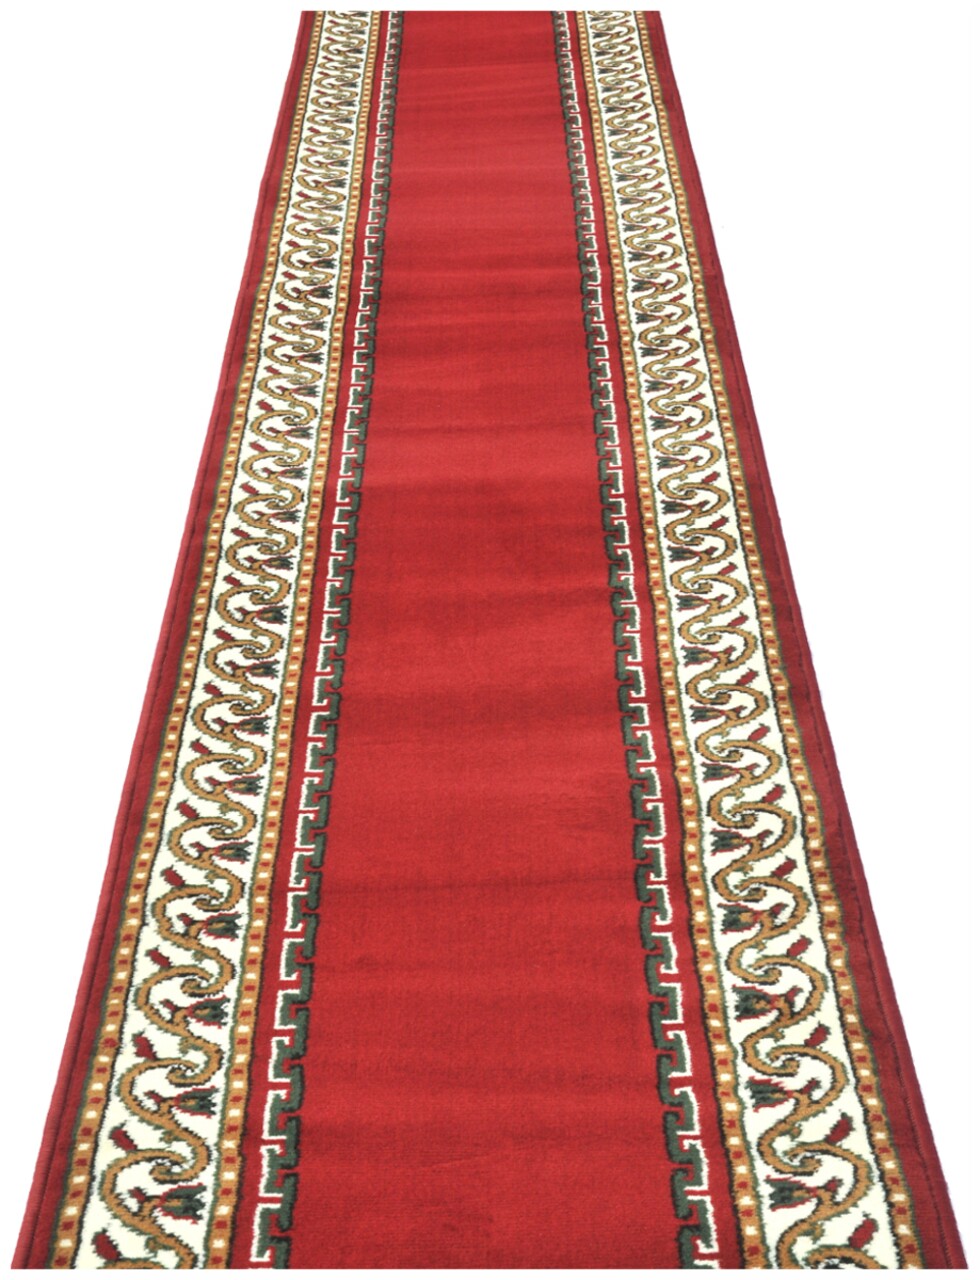 Gori előszoba szőnyeg, Decorino, 60x200 cm, polipropilén, piros